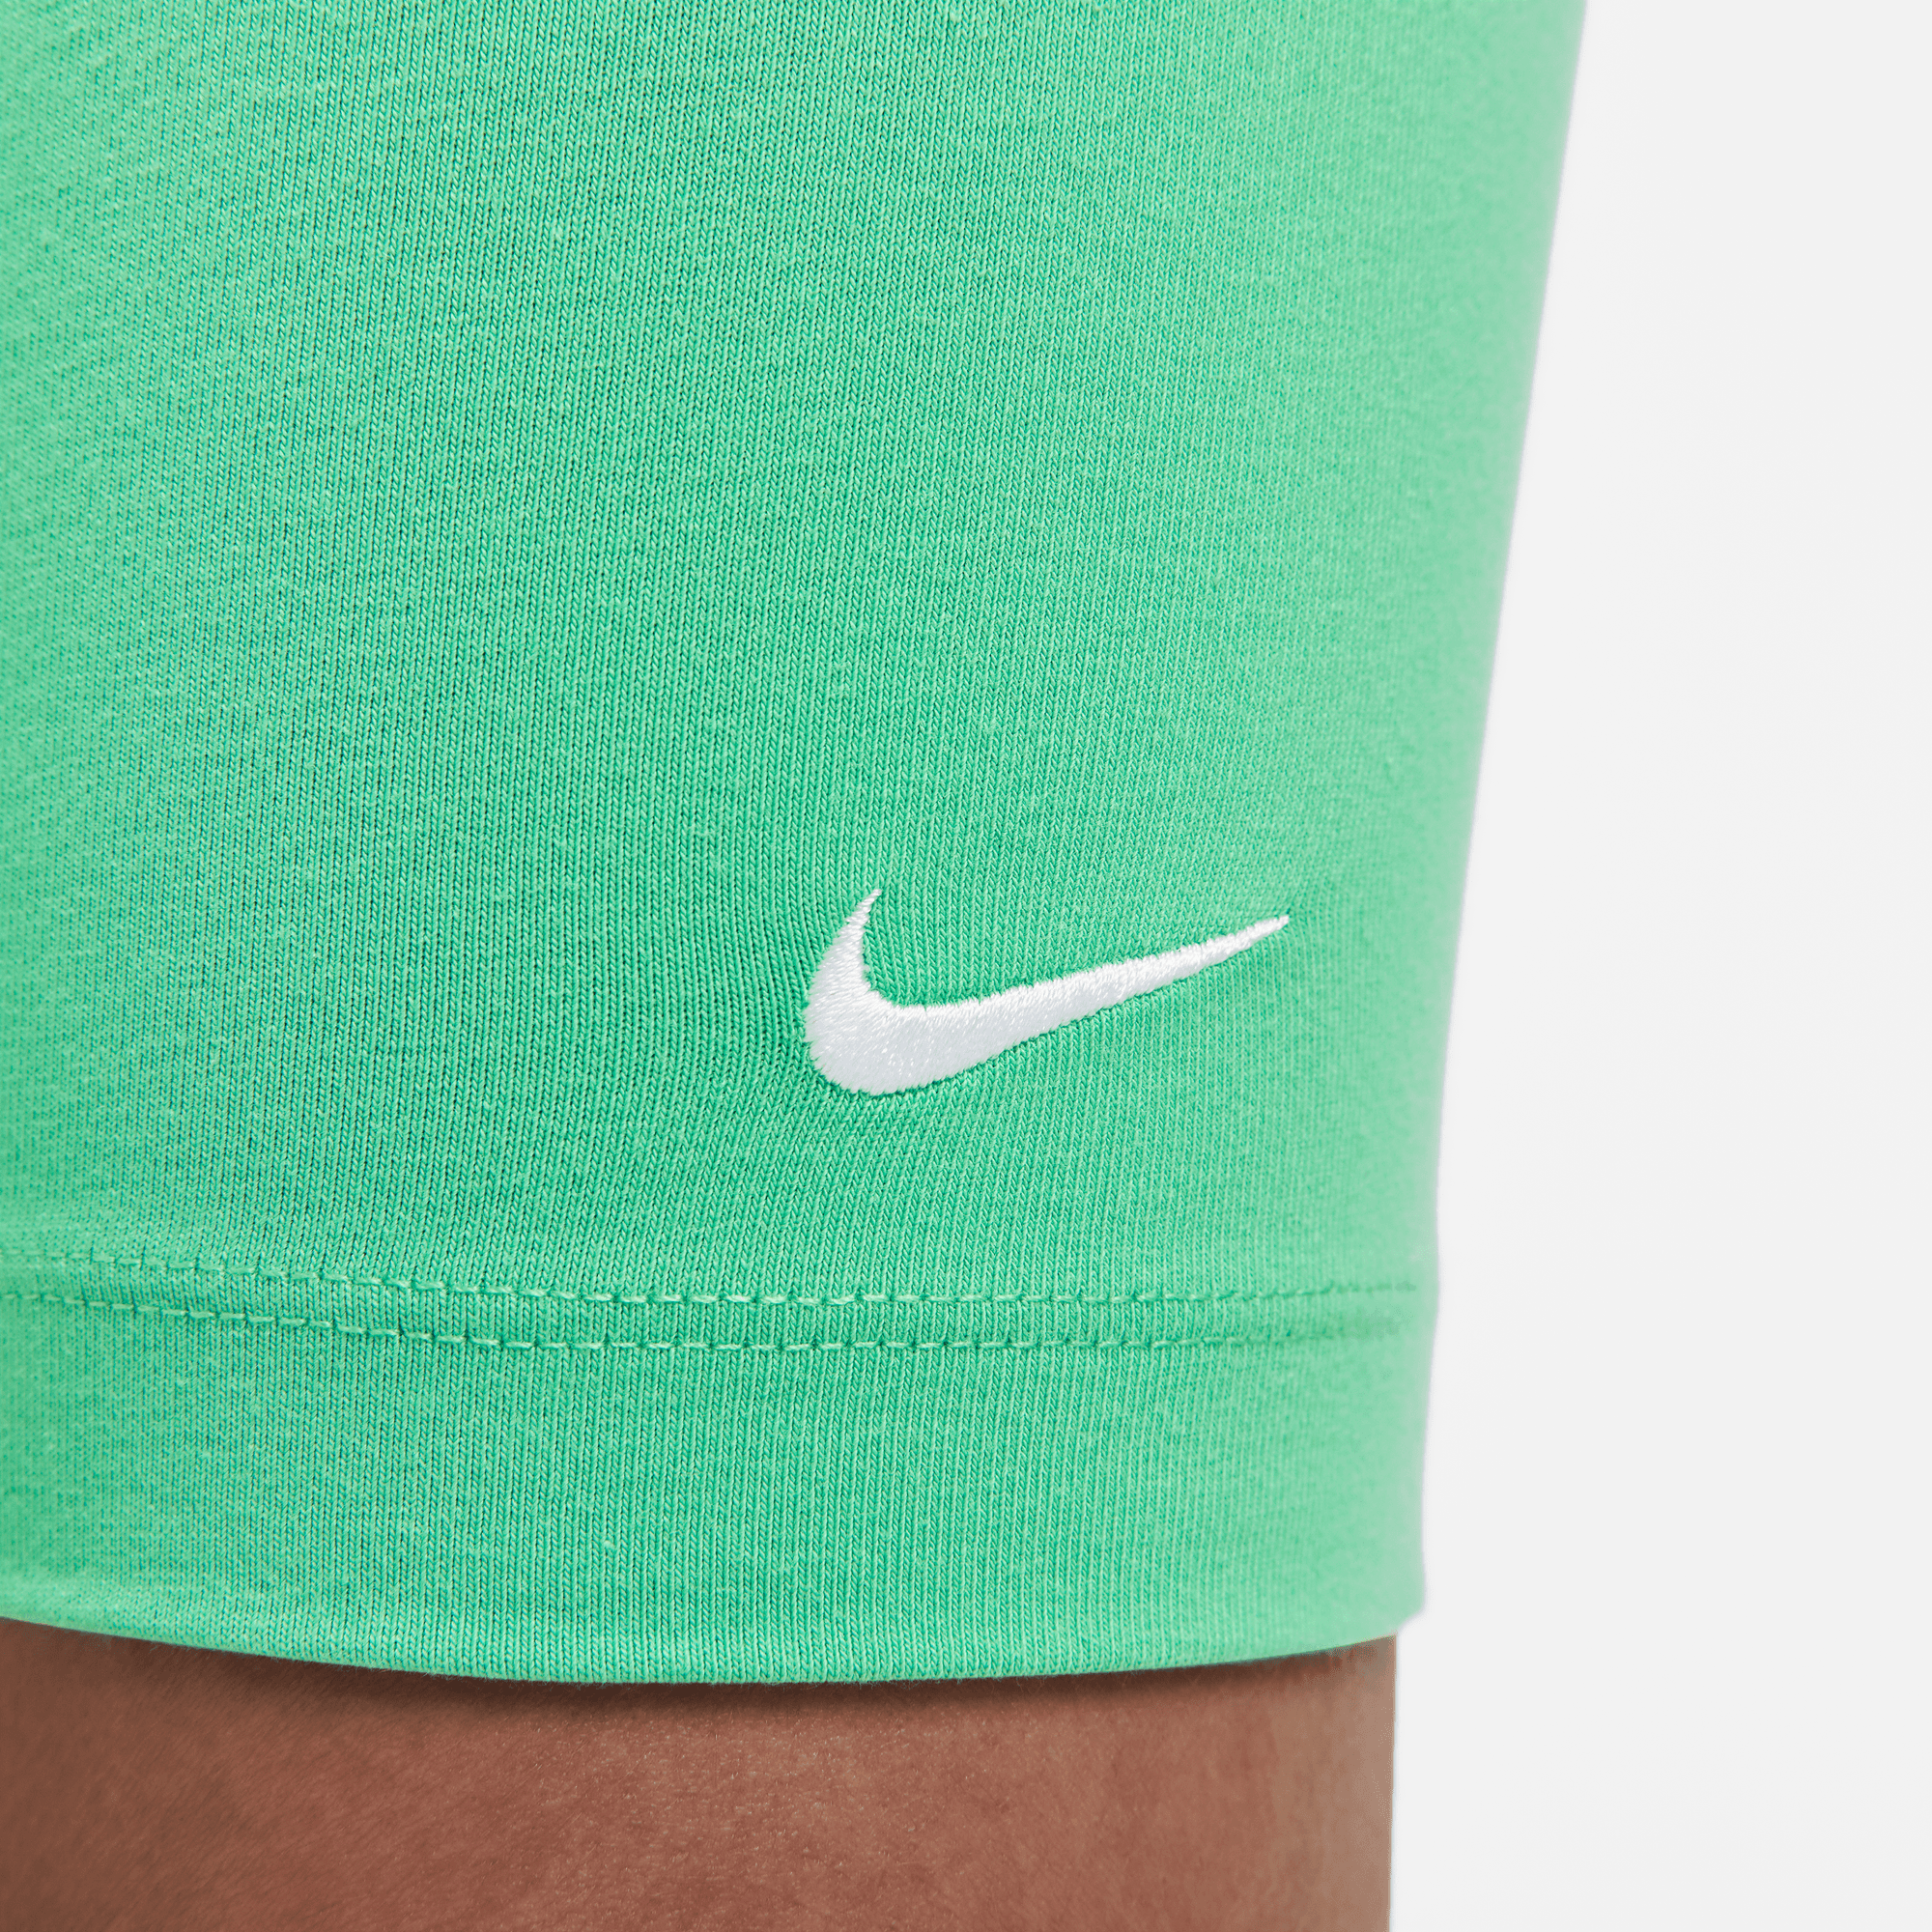 Nike Women's Sportswear Essential Green Mid-Rise Biker Shorts